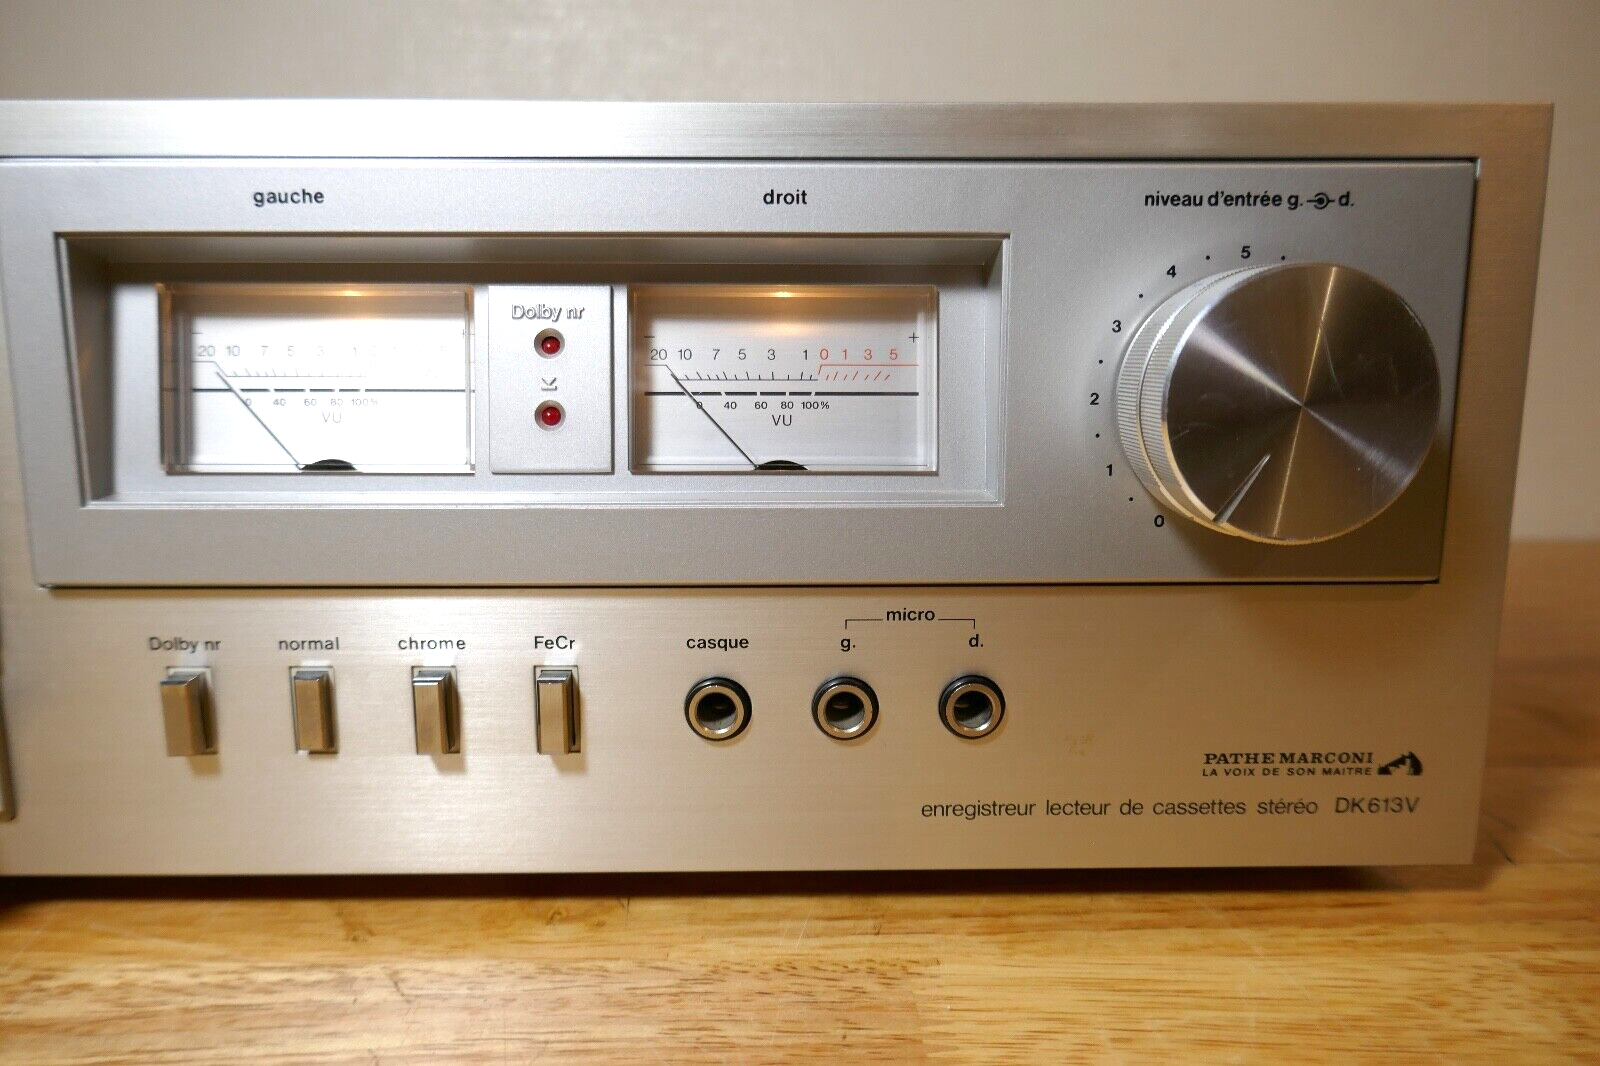 lecteur cassette tape deck pathe Marconi dk613v vintage occasion